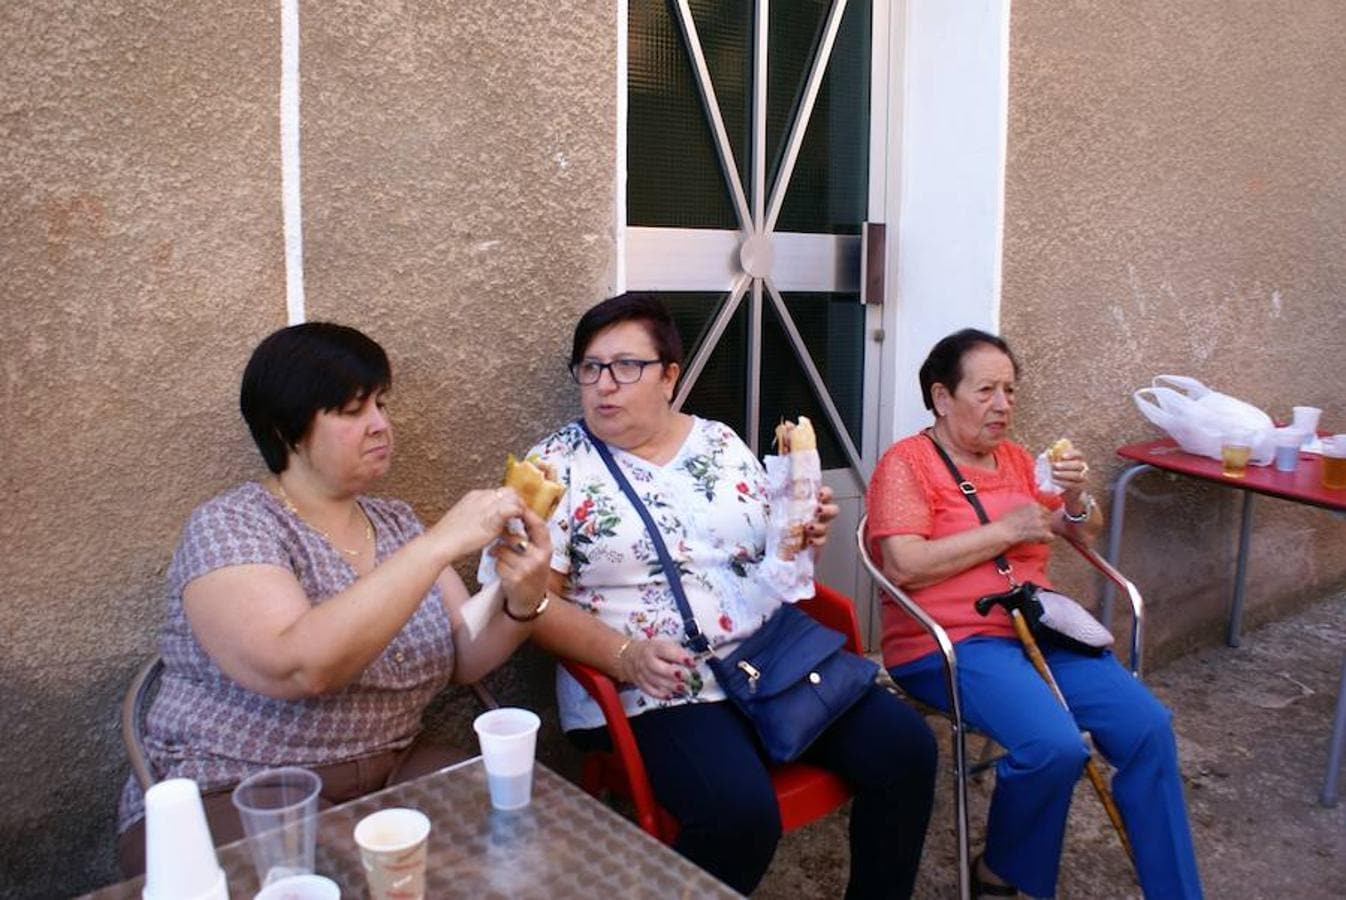 Más de 1.200 personas disfrutaron del festival del jamón con pimientos fritos que ha organizado Cárdenas con motivo del día grande de sus fiestas patronales y que este lunes finalizan con el entierro de la cuba y la quema del gitanillo.